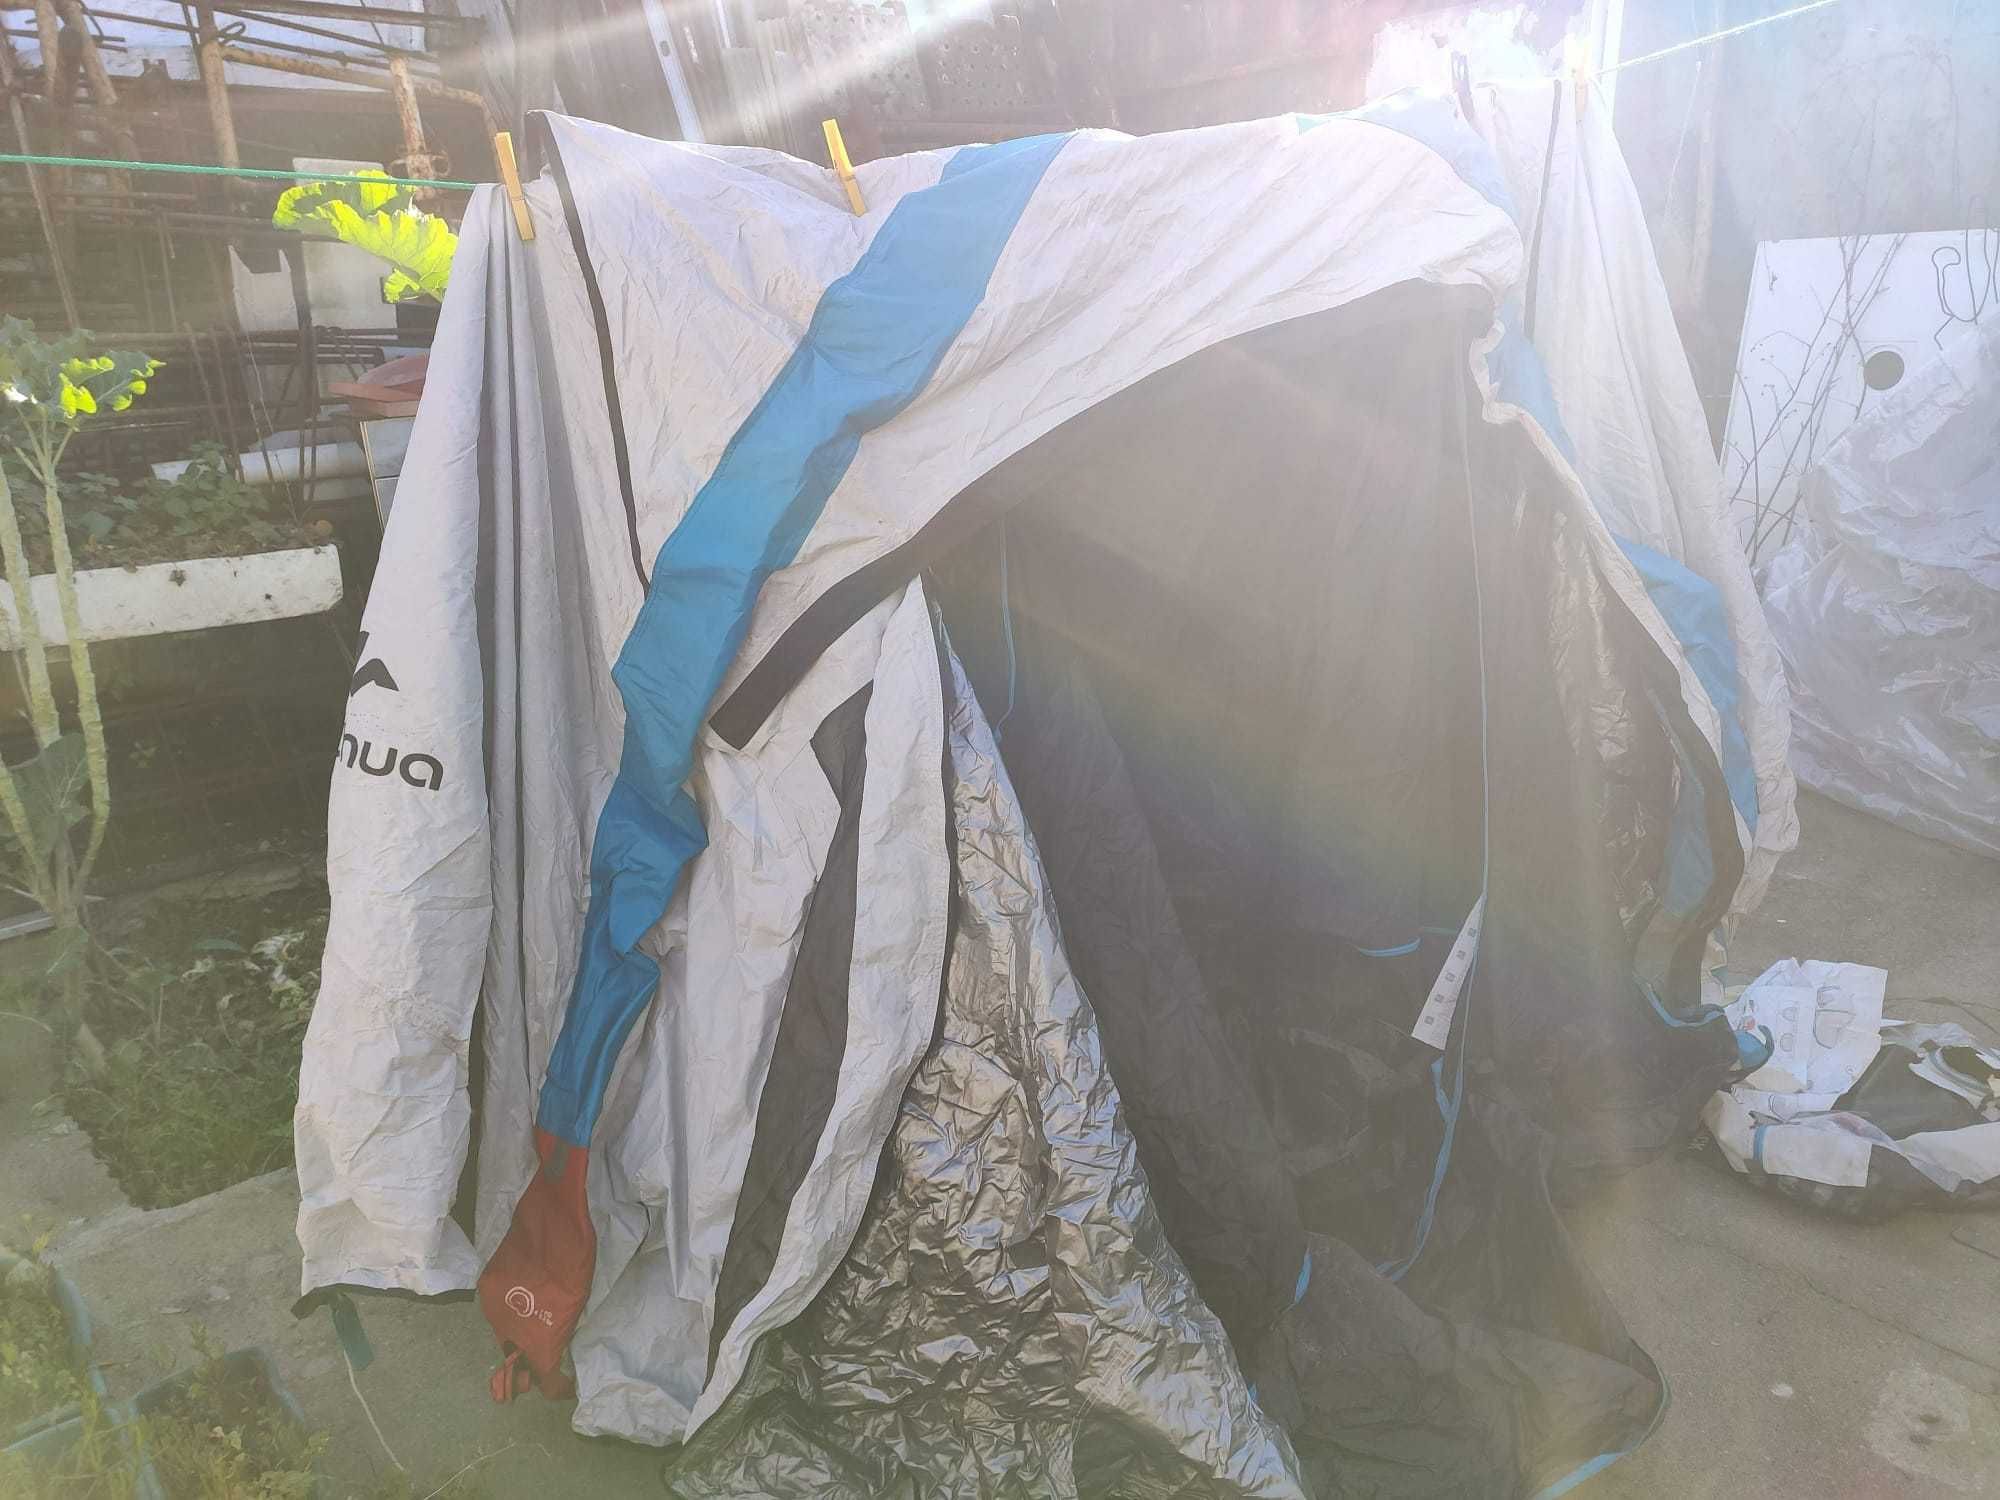 Tenda de campismo insuflável Quechua Air seconds 2 xl